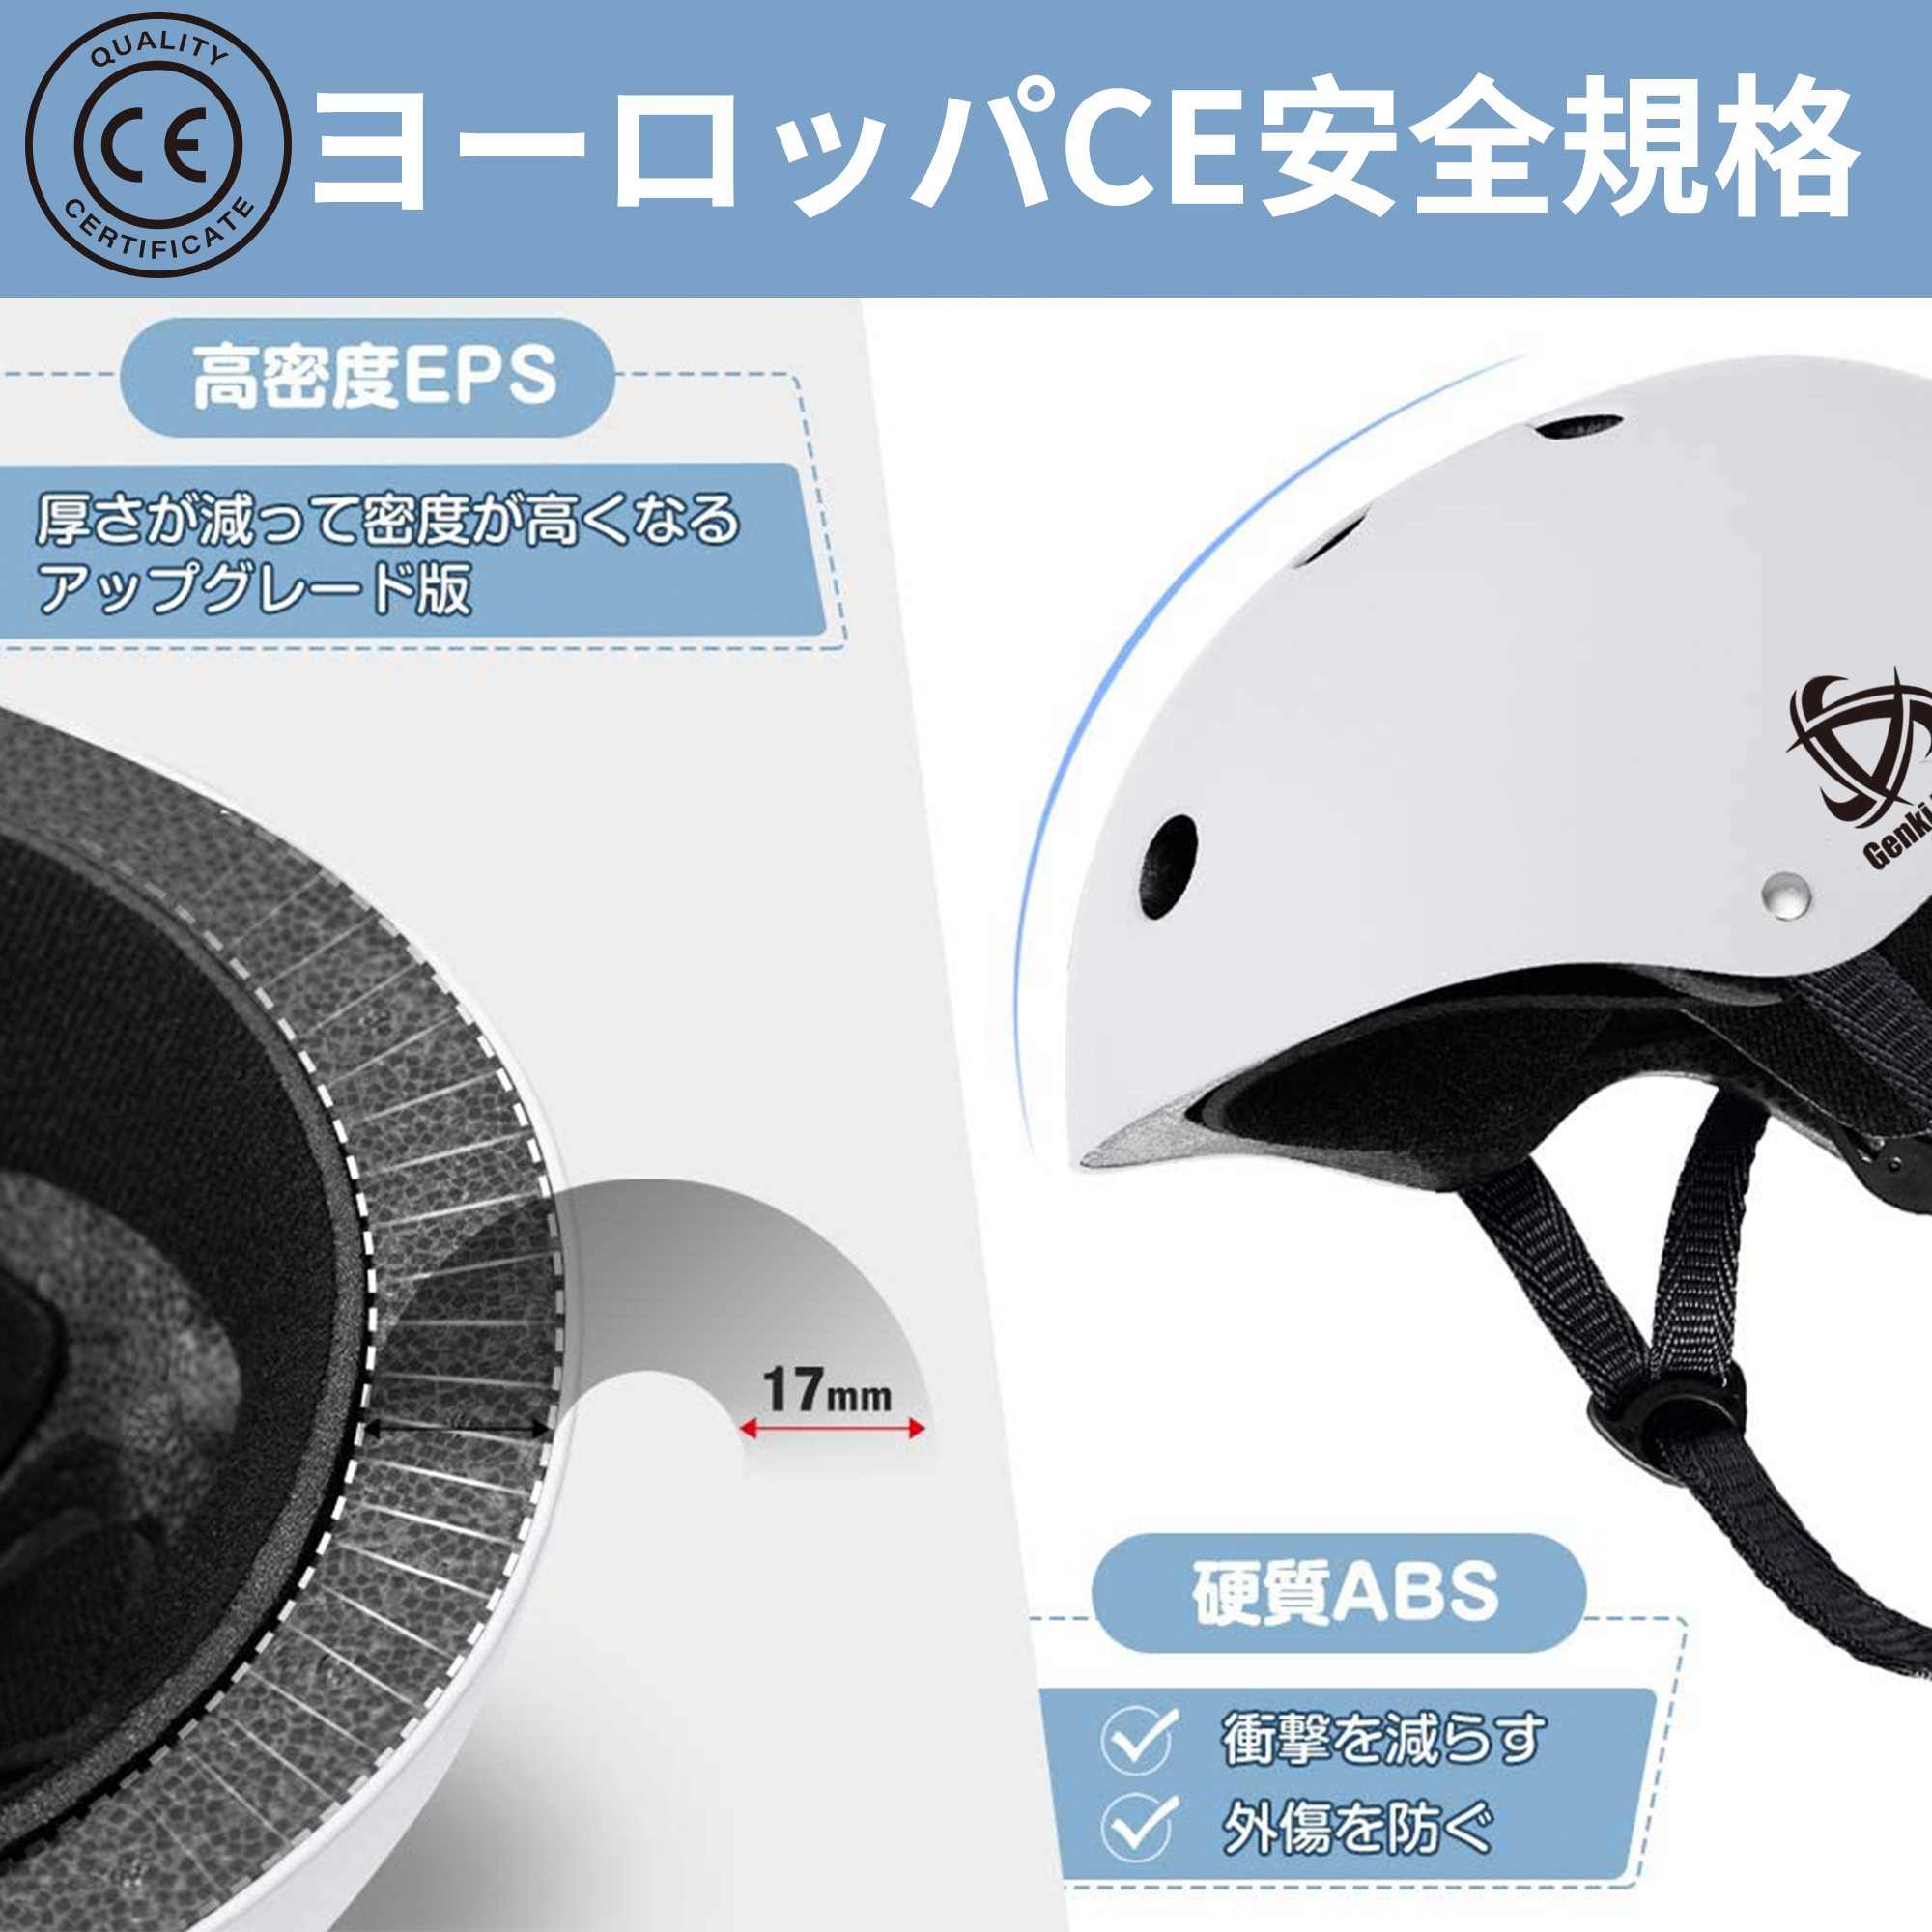 自転車ヘルメット CE安全規格 子供大人兼用 (ブラック) – (株) ゲンキラボ